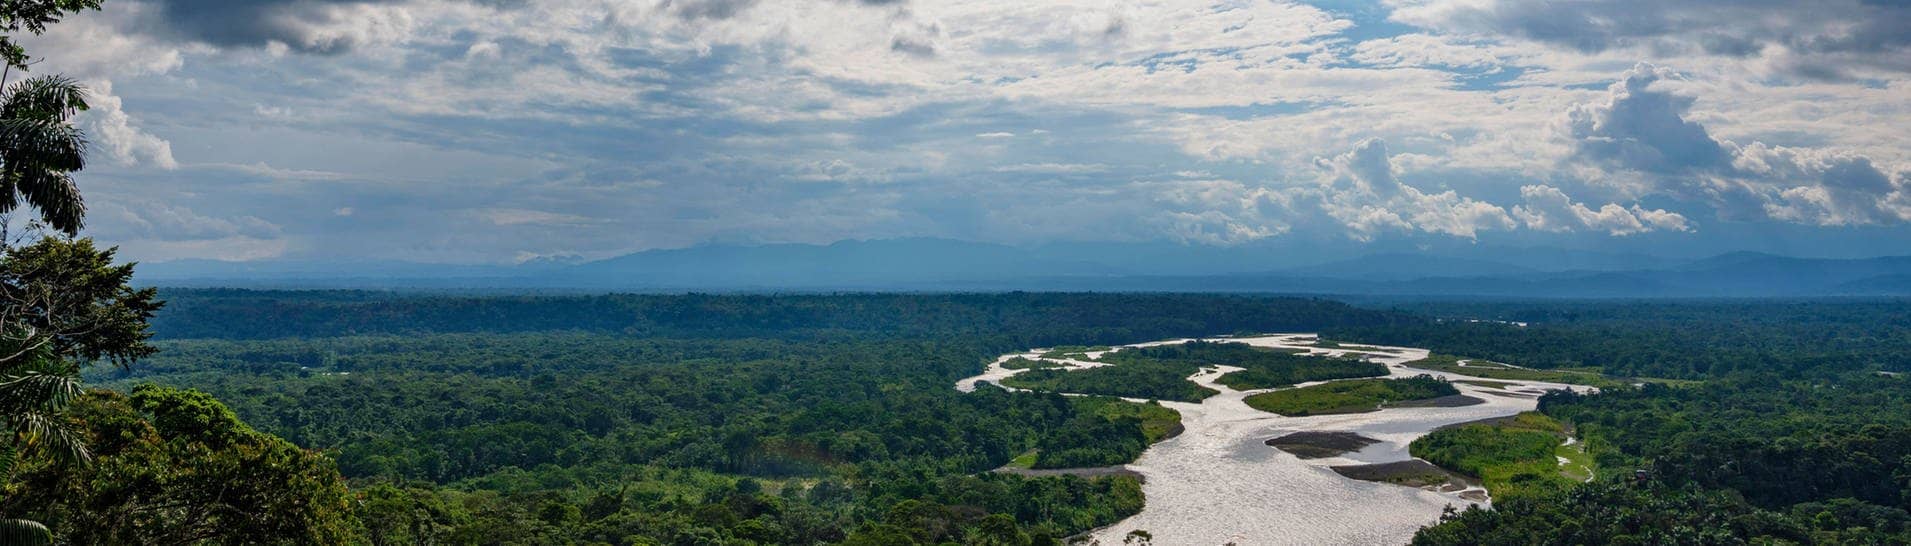 Der Amazonas-Regenwald in Ecuador.